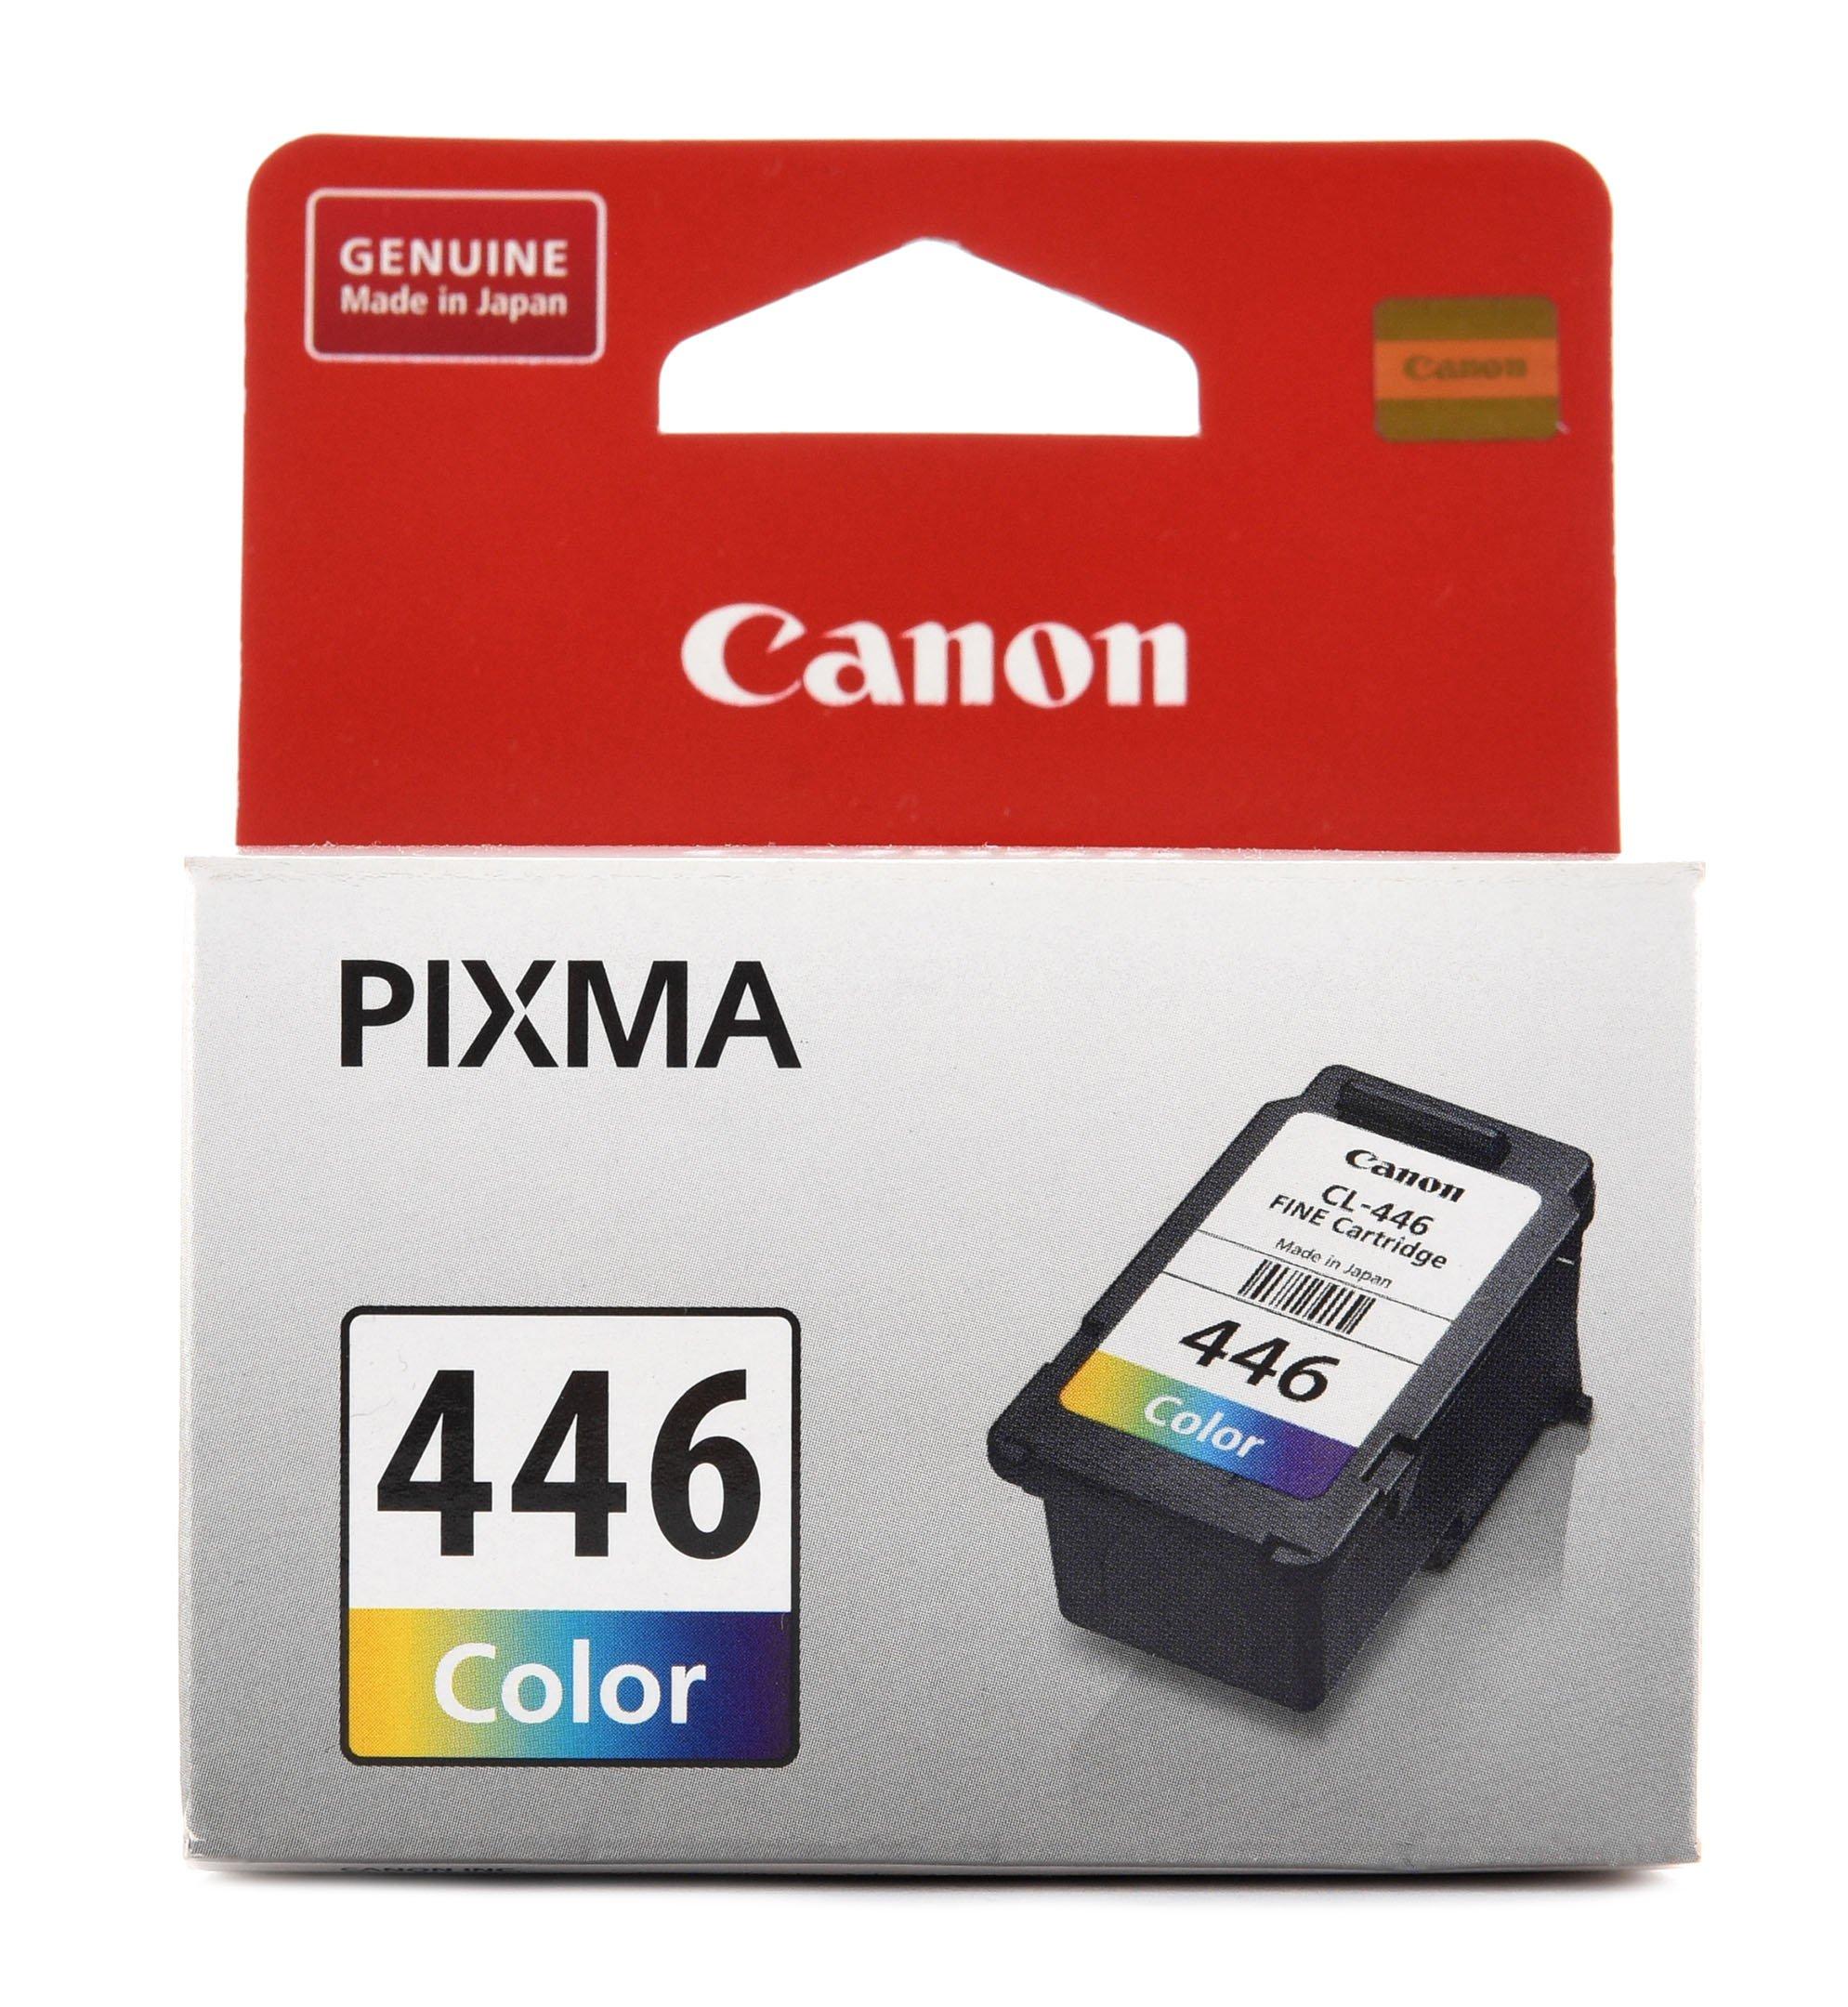 Canon pixma 445. Canon CL 446 Color. Картридж Canon 446. Картридж Canon PIXMA mx2440/2540 (o) PG-445, BK. Картридж Canon PG-445 8283b001.